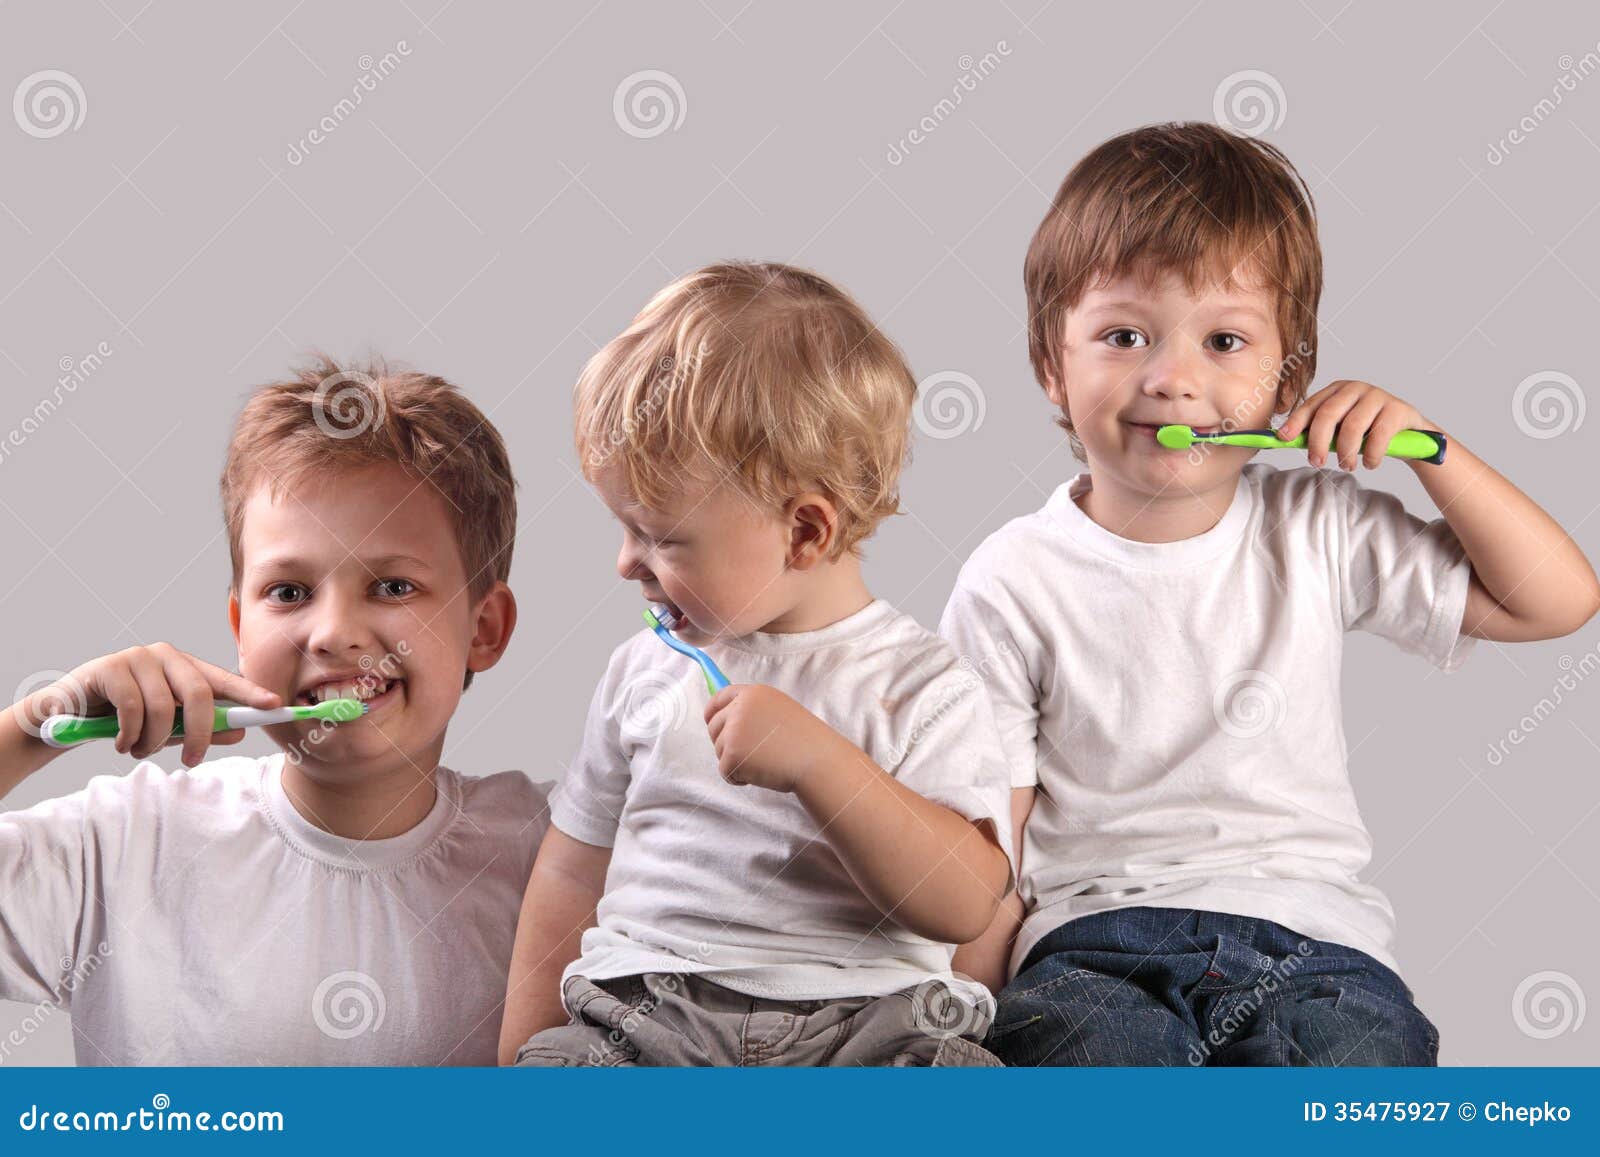 brushing teeth